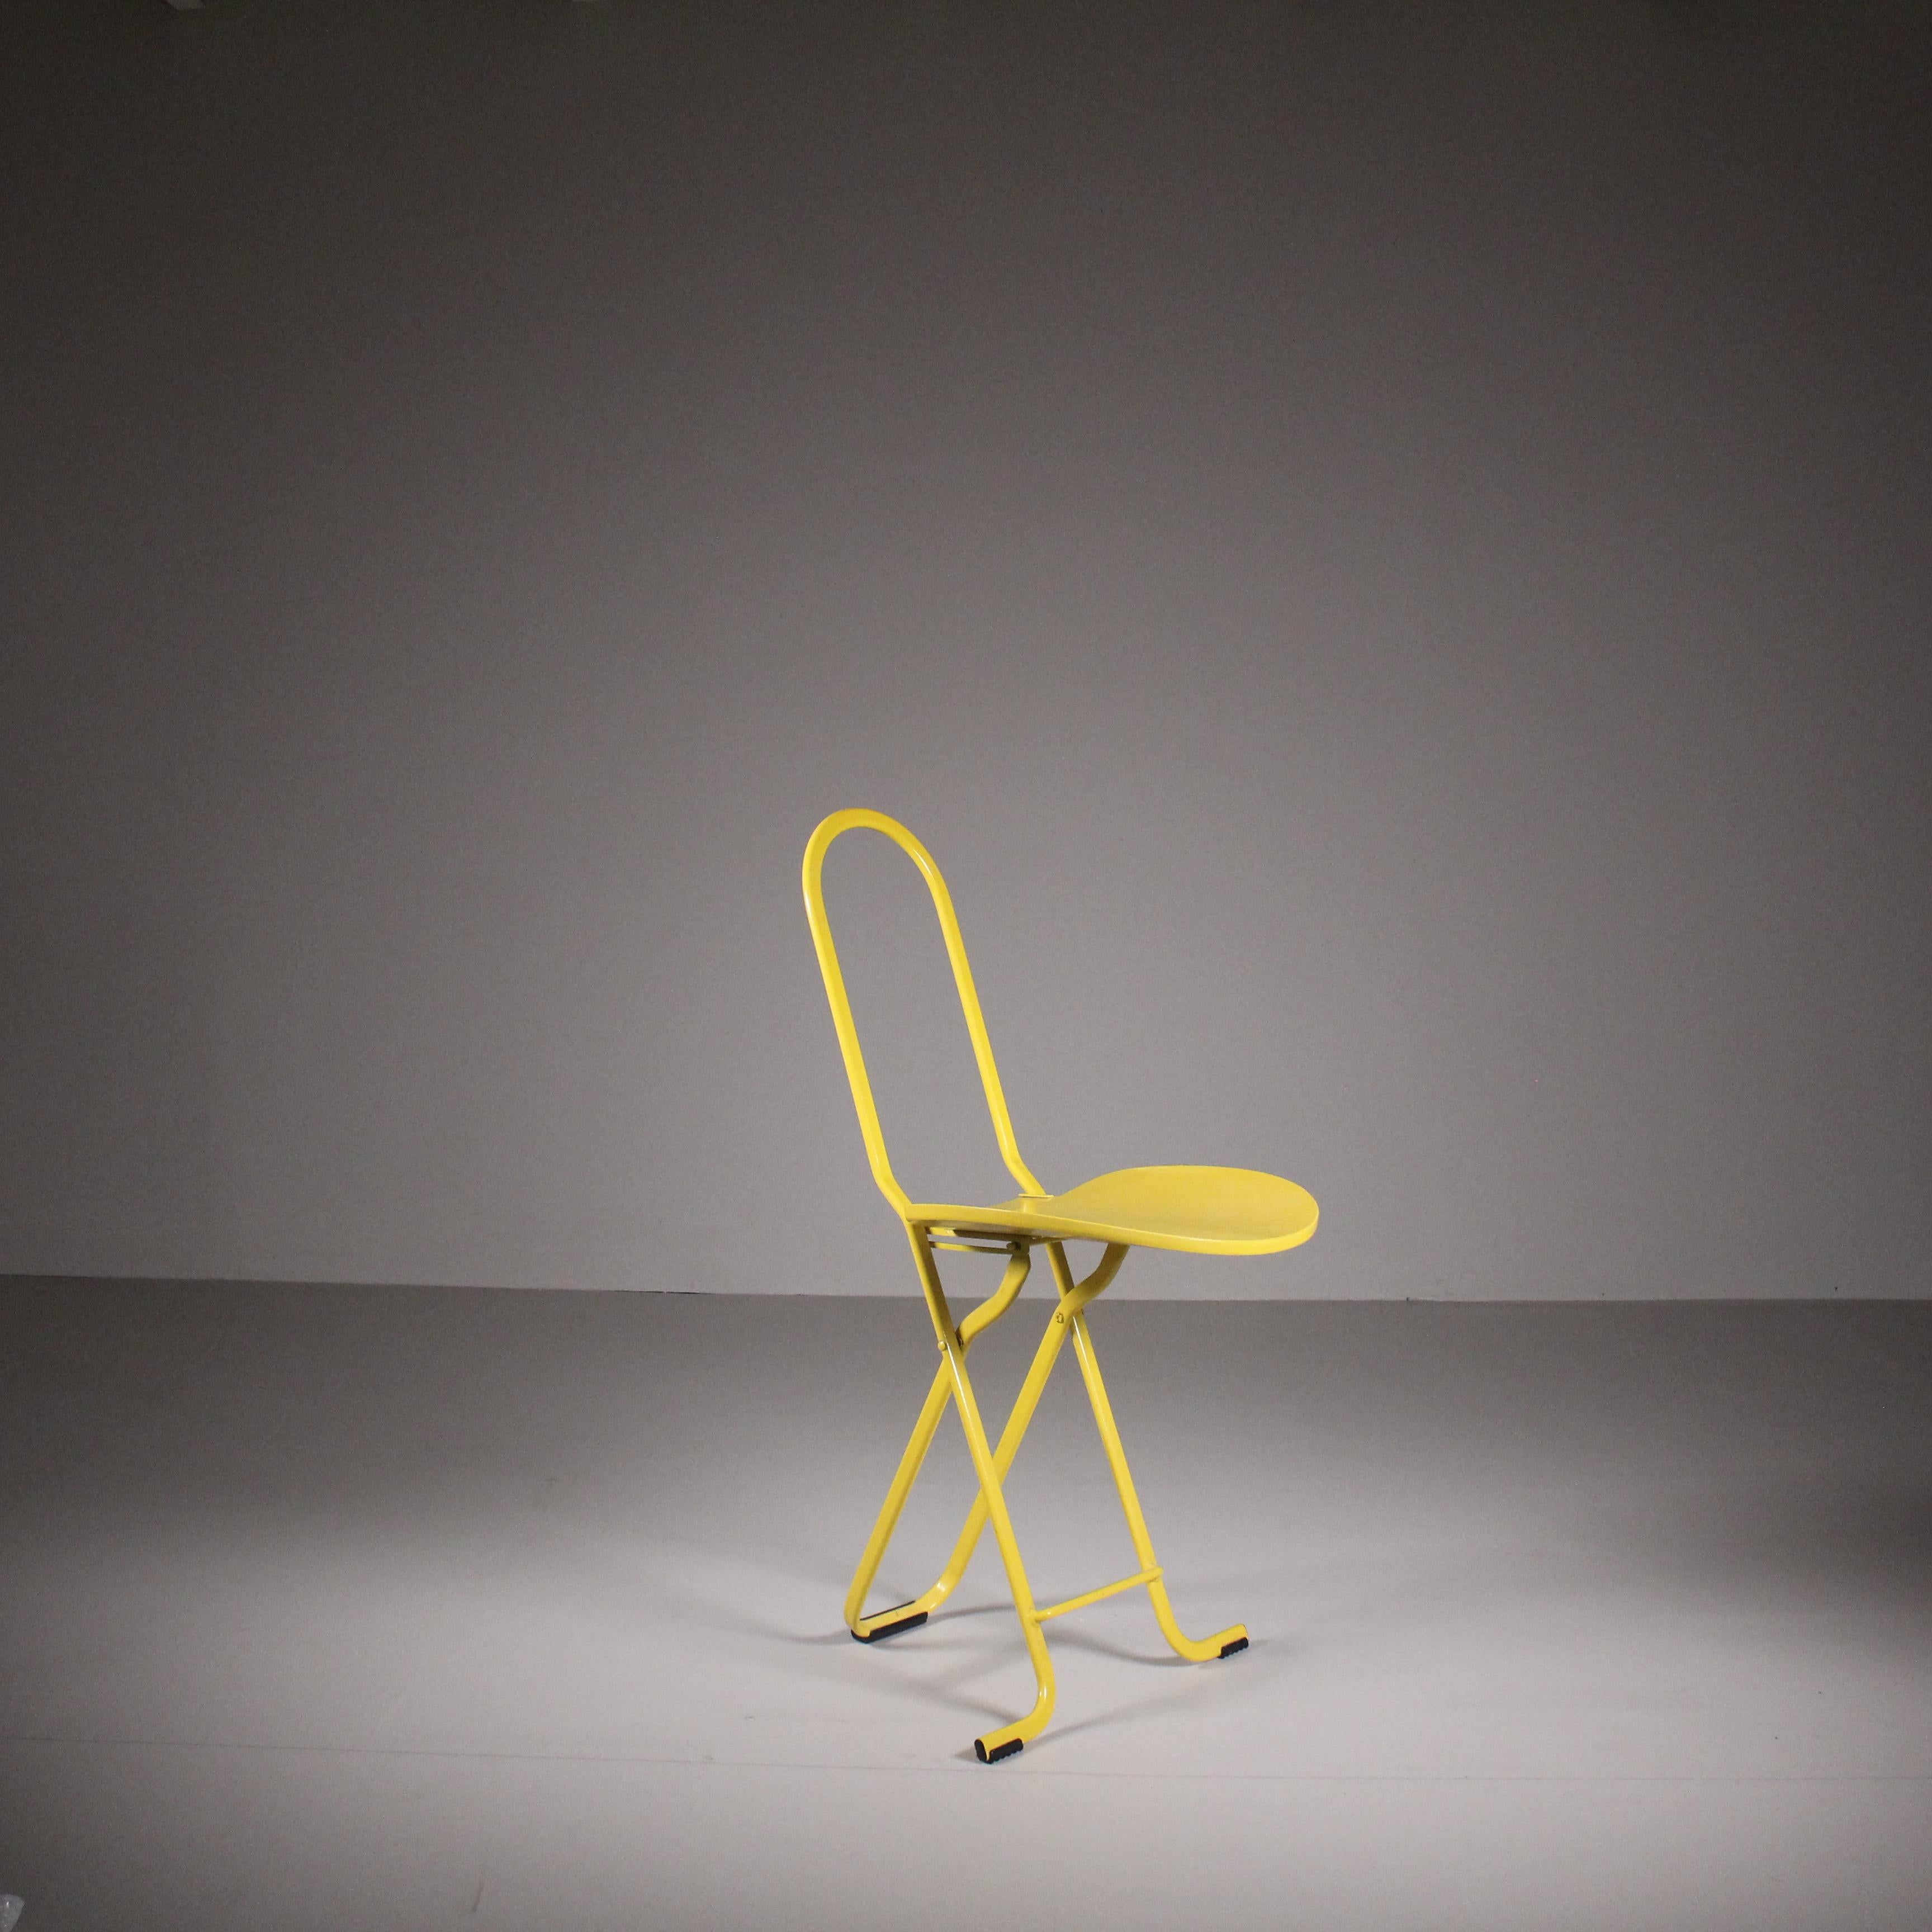 Klappbarer Stuhl Dafne, Gastone Rinaldi, Thema, 1970. Der klappbare Stuhl Dafne, der 1970 von Gastone Rinaldi als Teil der Kollektion Thema entworfen wurde, strahlt zeitlose Eleganz und Zweckmäßigkeit aus. Mit seinem leuchtenden Gelb bringt dieser